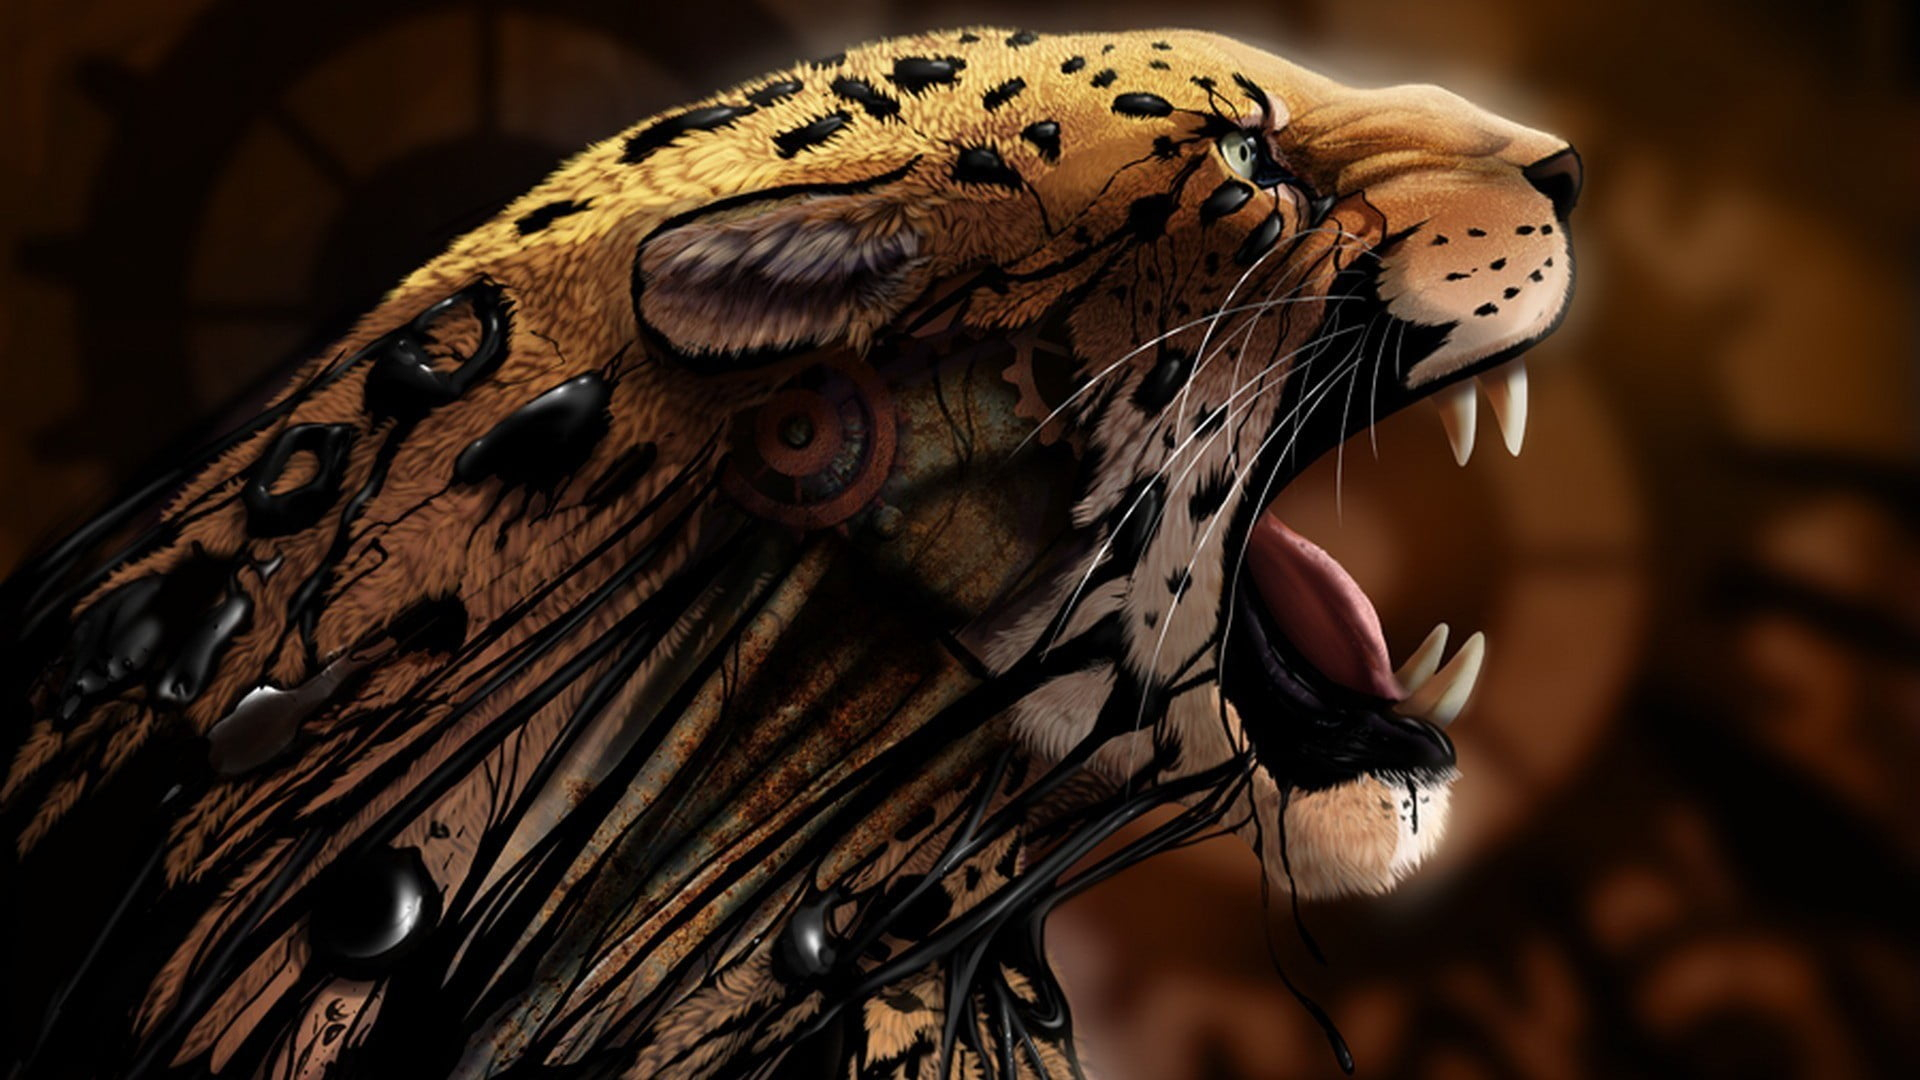 Tiger illustration, abstract, animals, leopard, digital art, artwork wallpaper